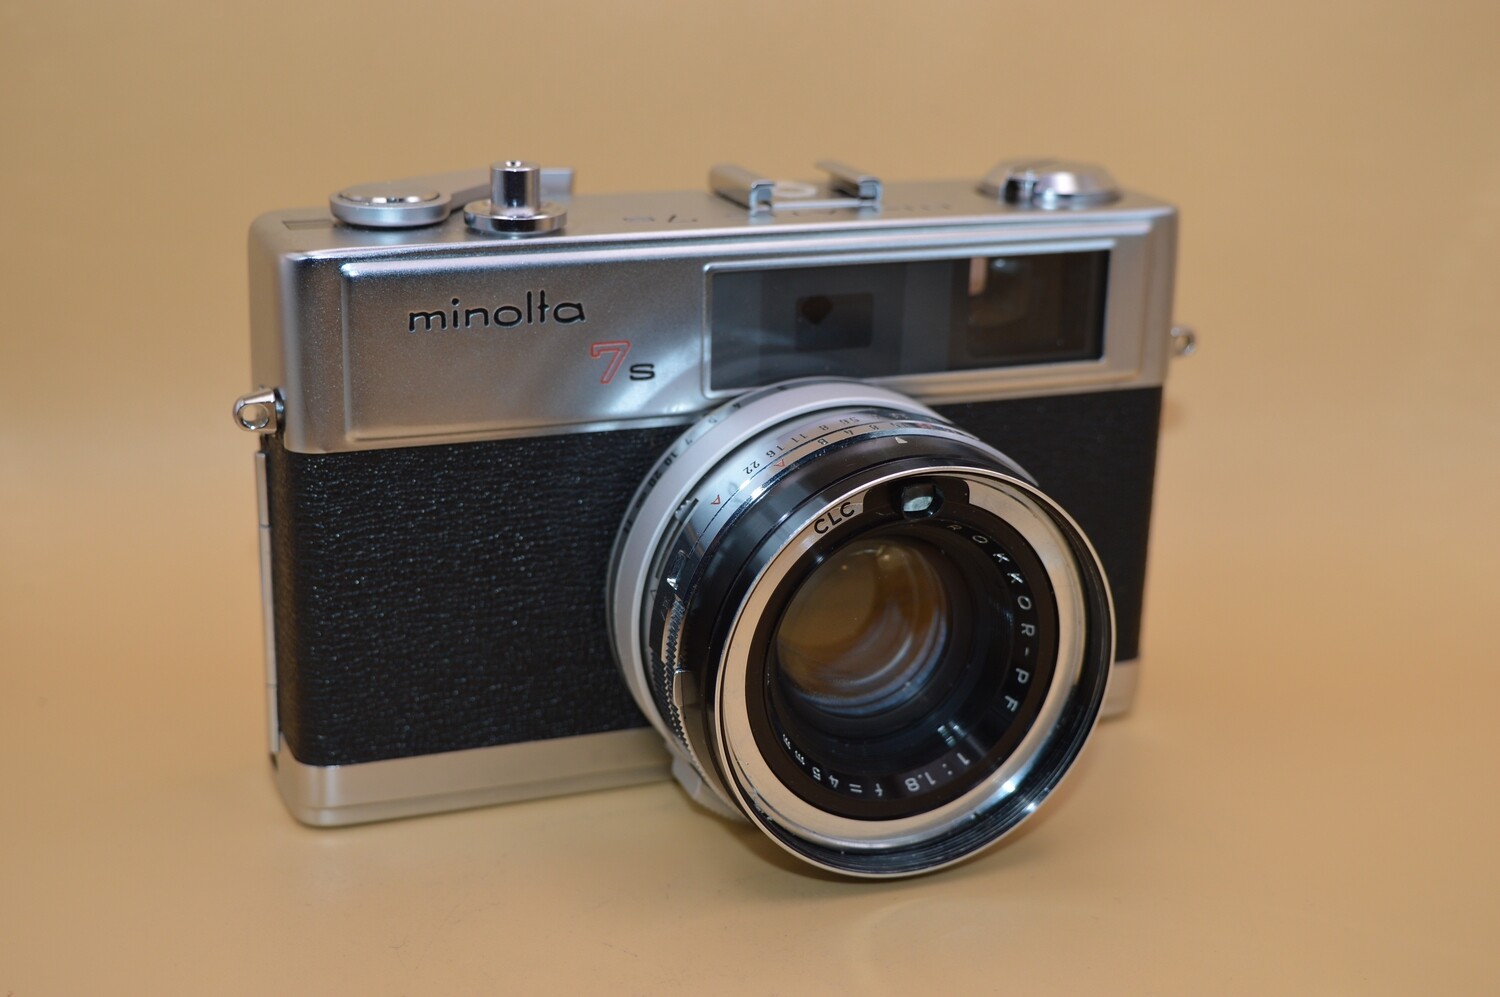 Minolta Hi-Matic 7s 35mm Rangefinder Film Camera Clad Seals Battery